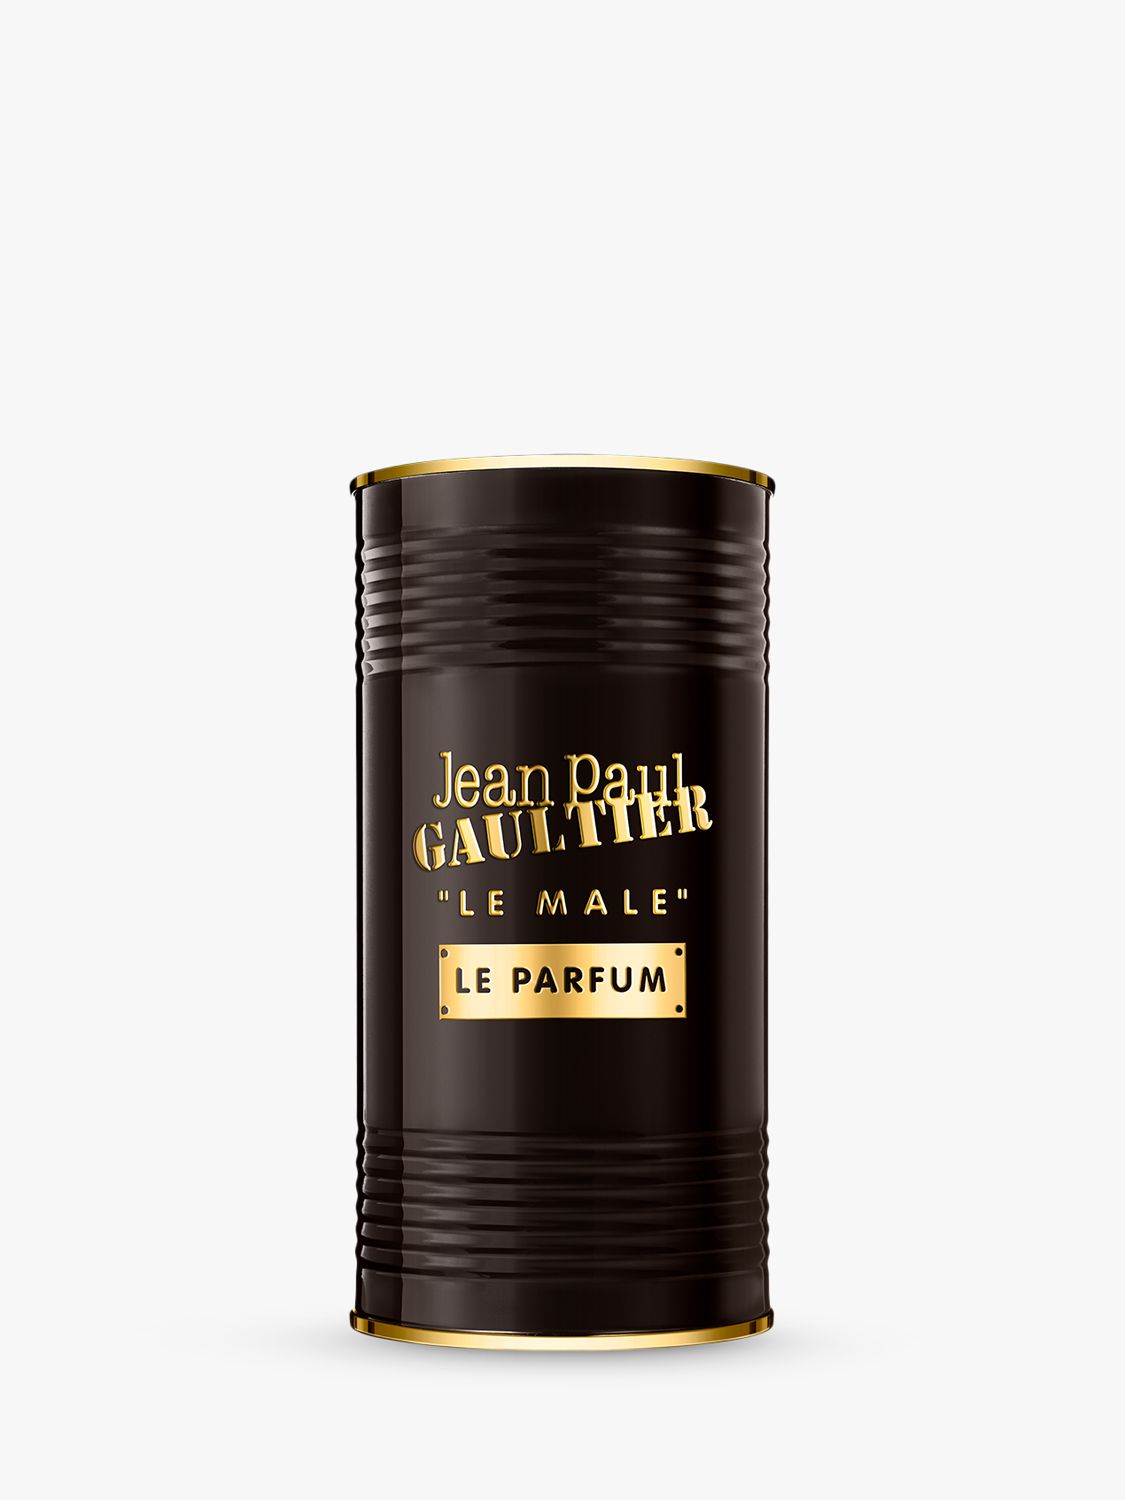 Jean Paul Gaultier Le Male Le Parfum, 75ml